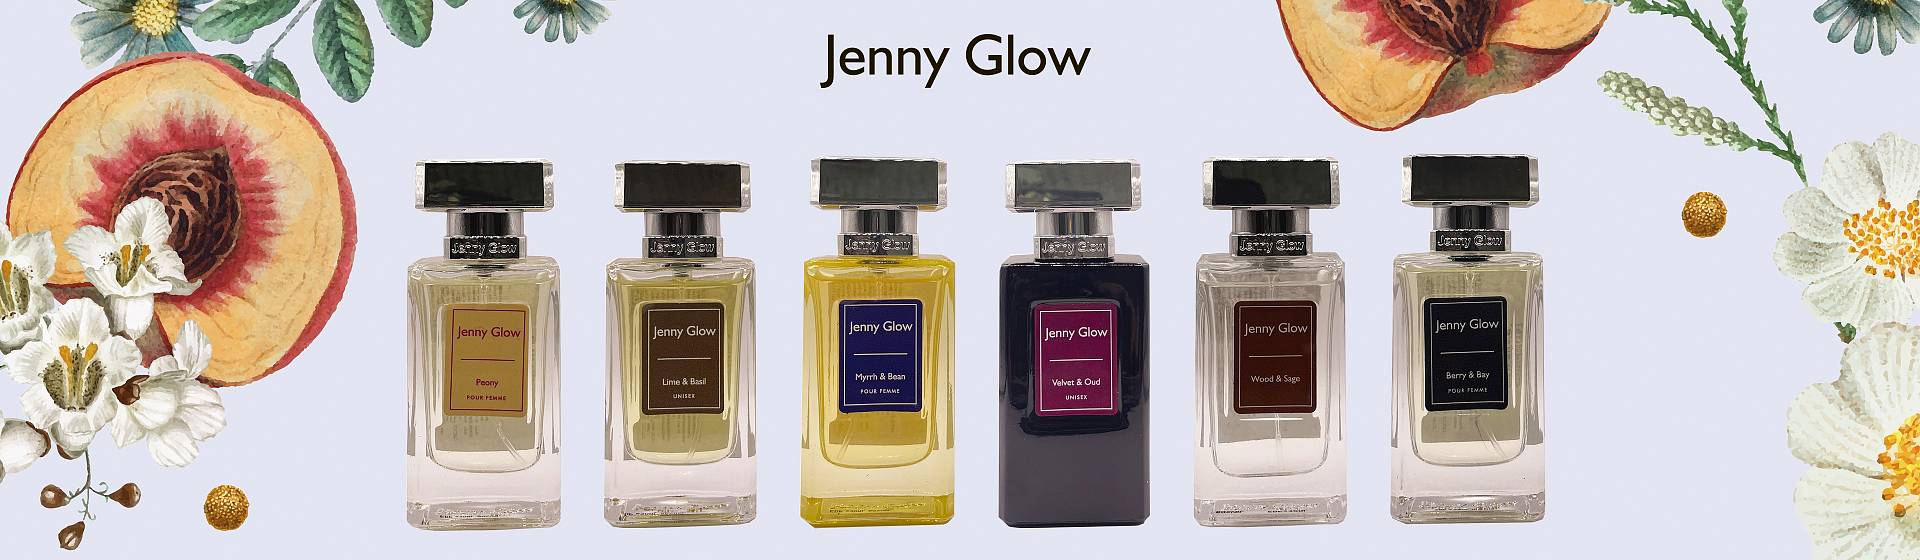 Jenny Glow